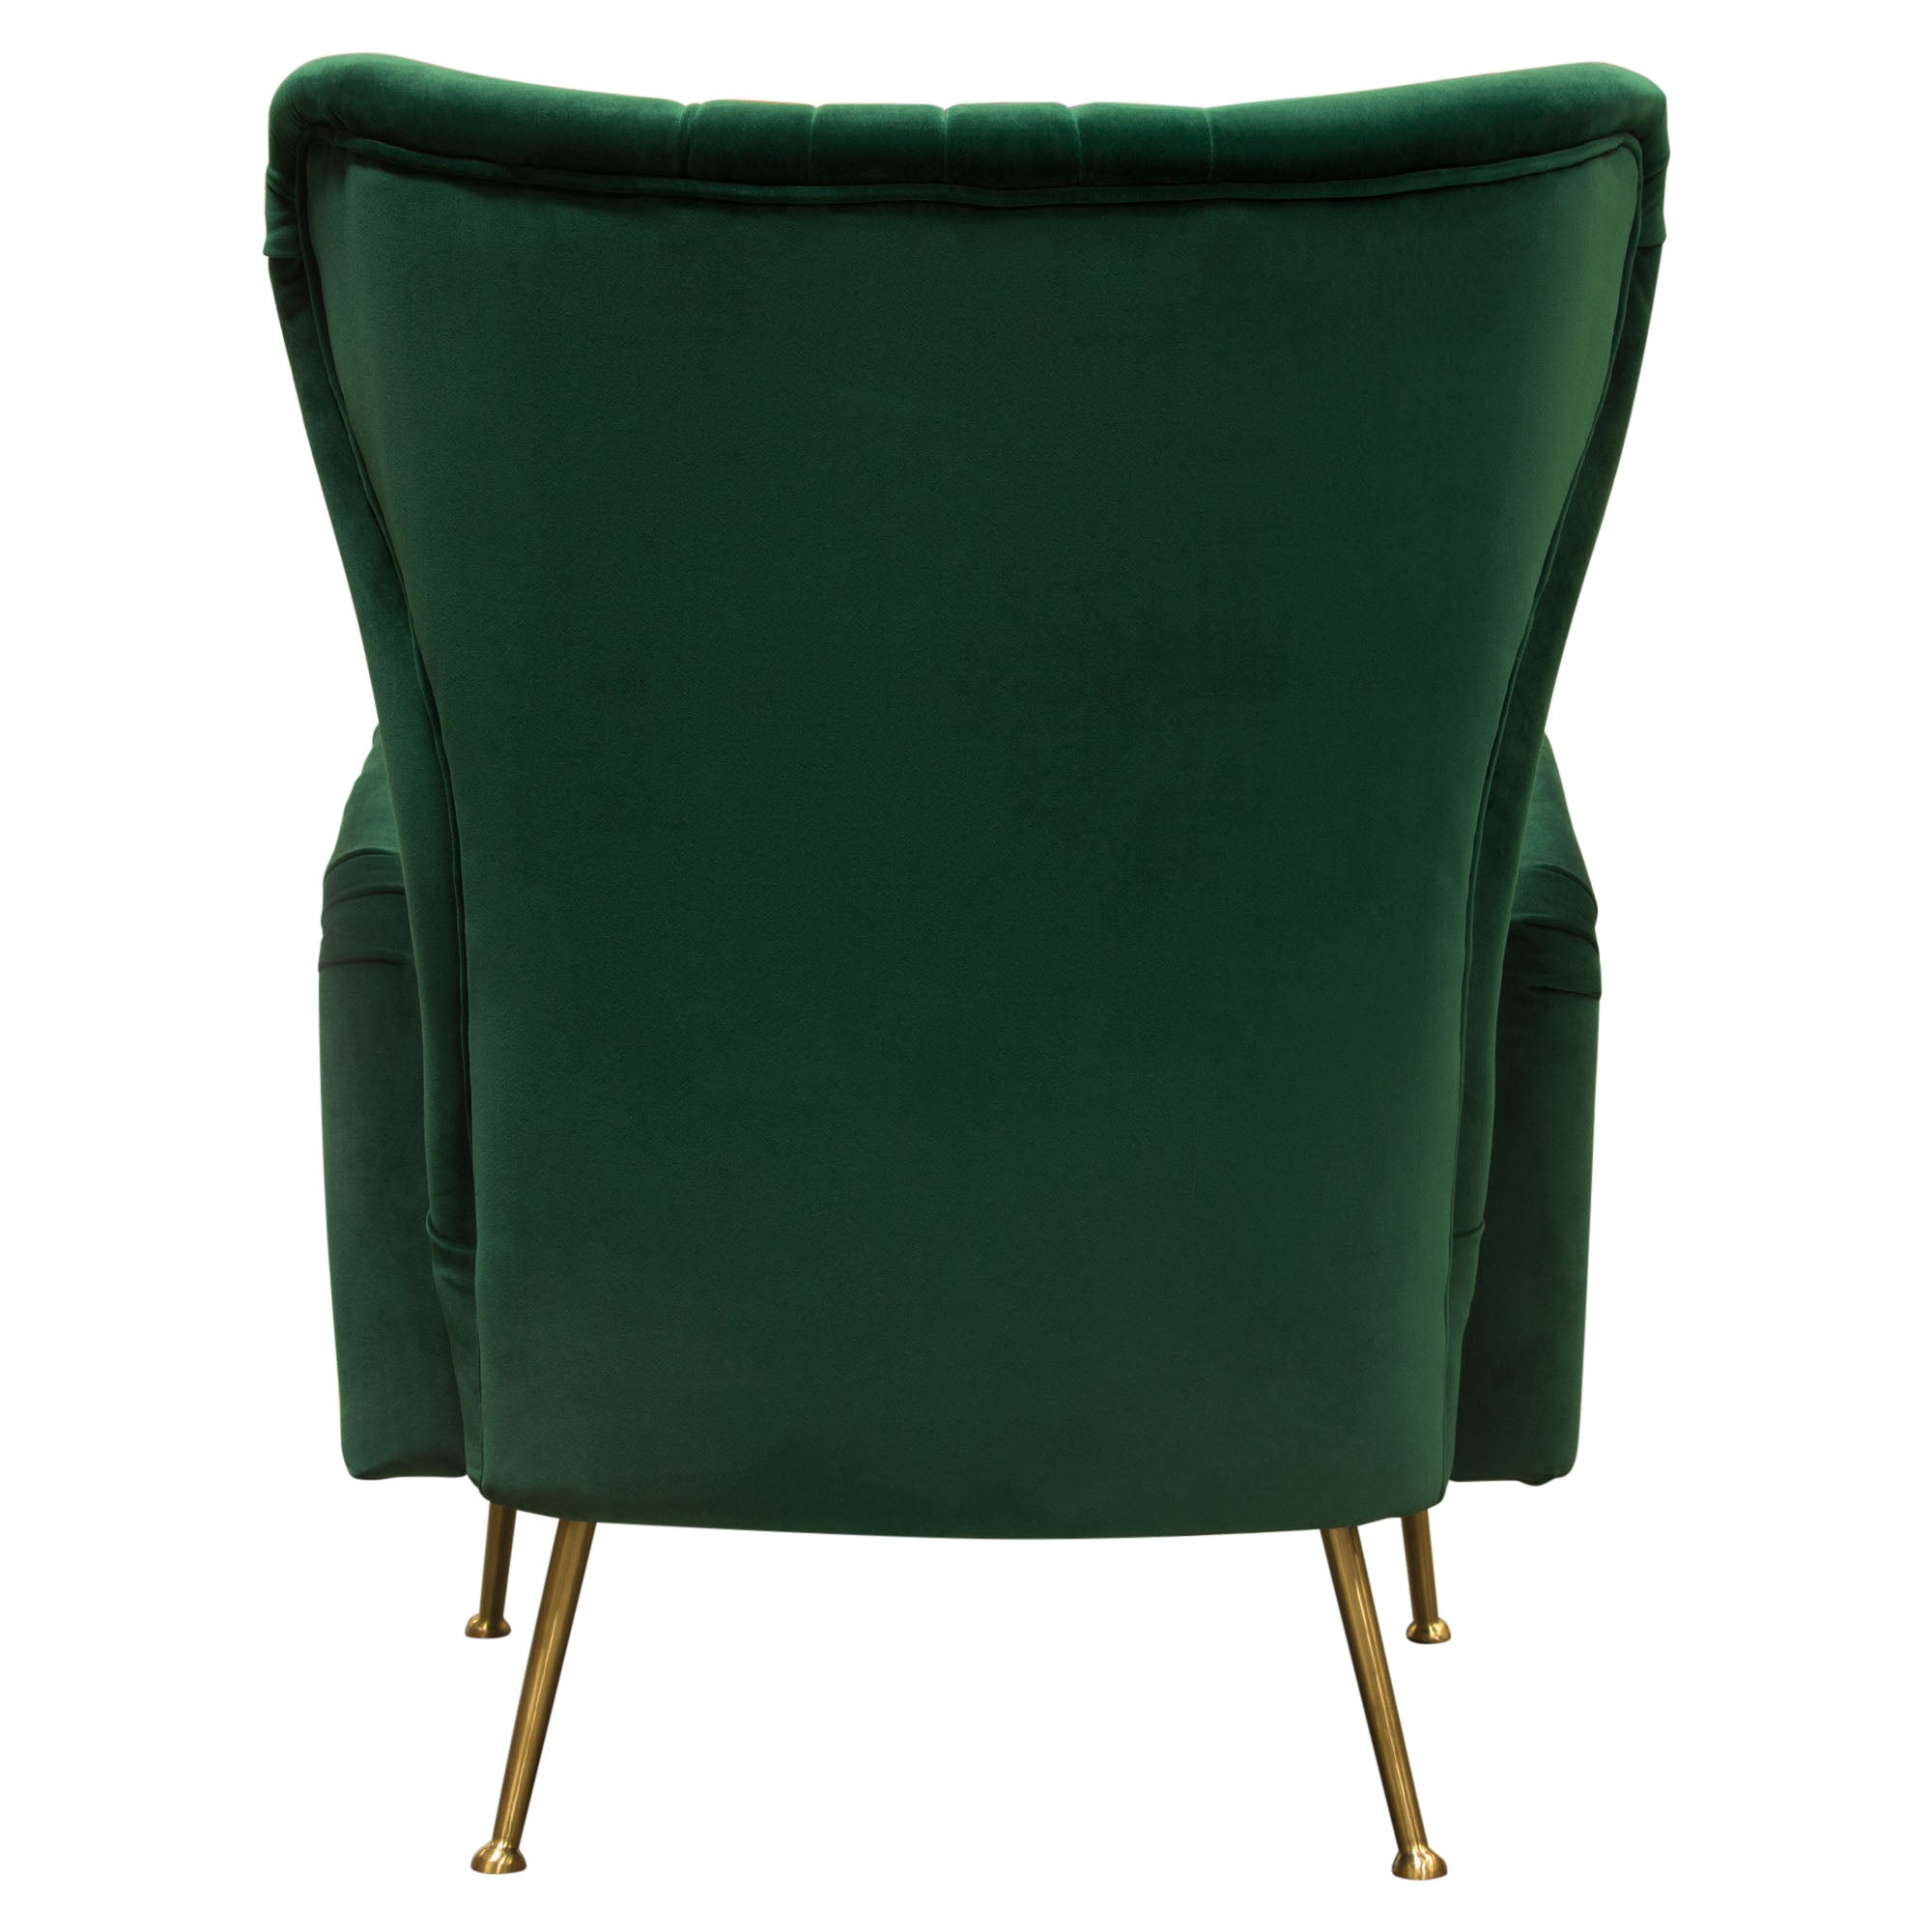 Diamond Sofa Ava Chair in Emerald Green Velvet with Gold Leg